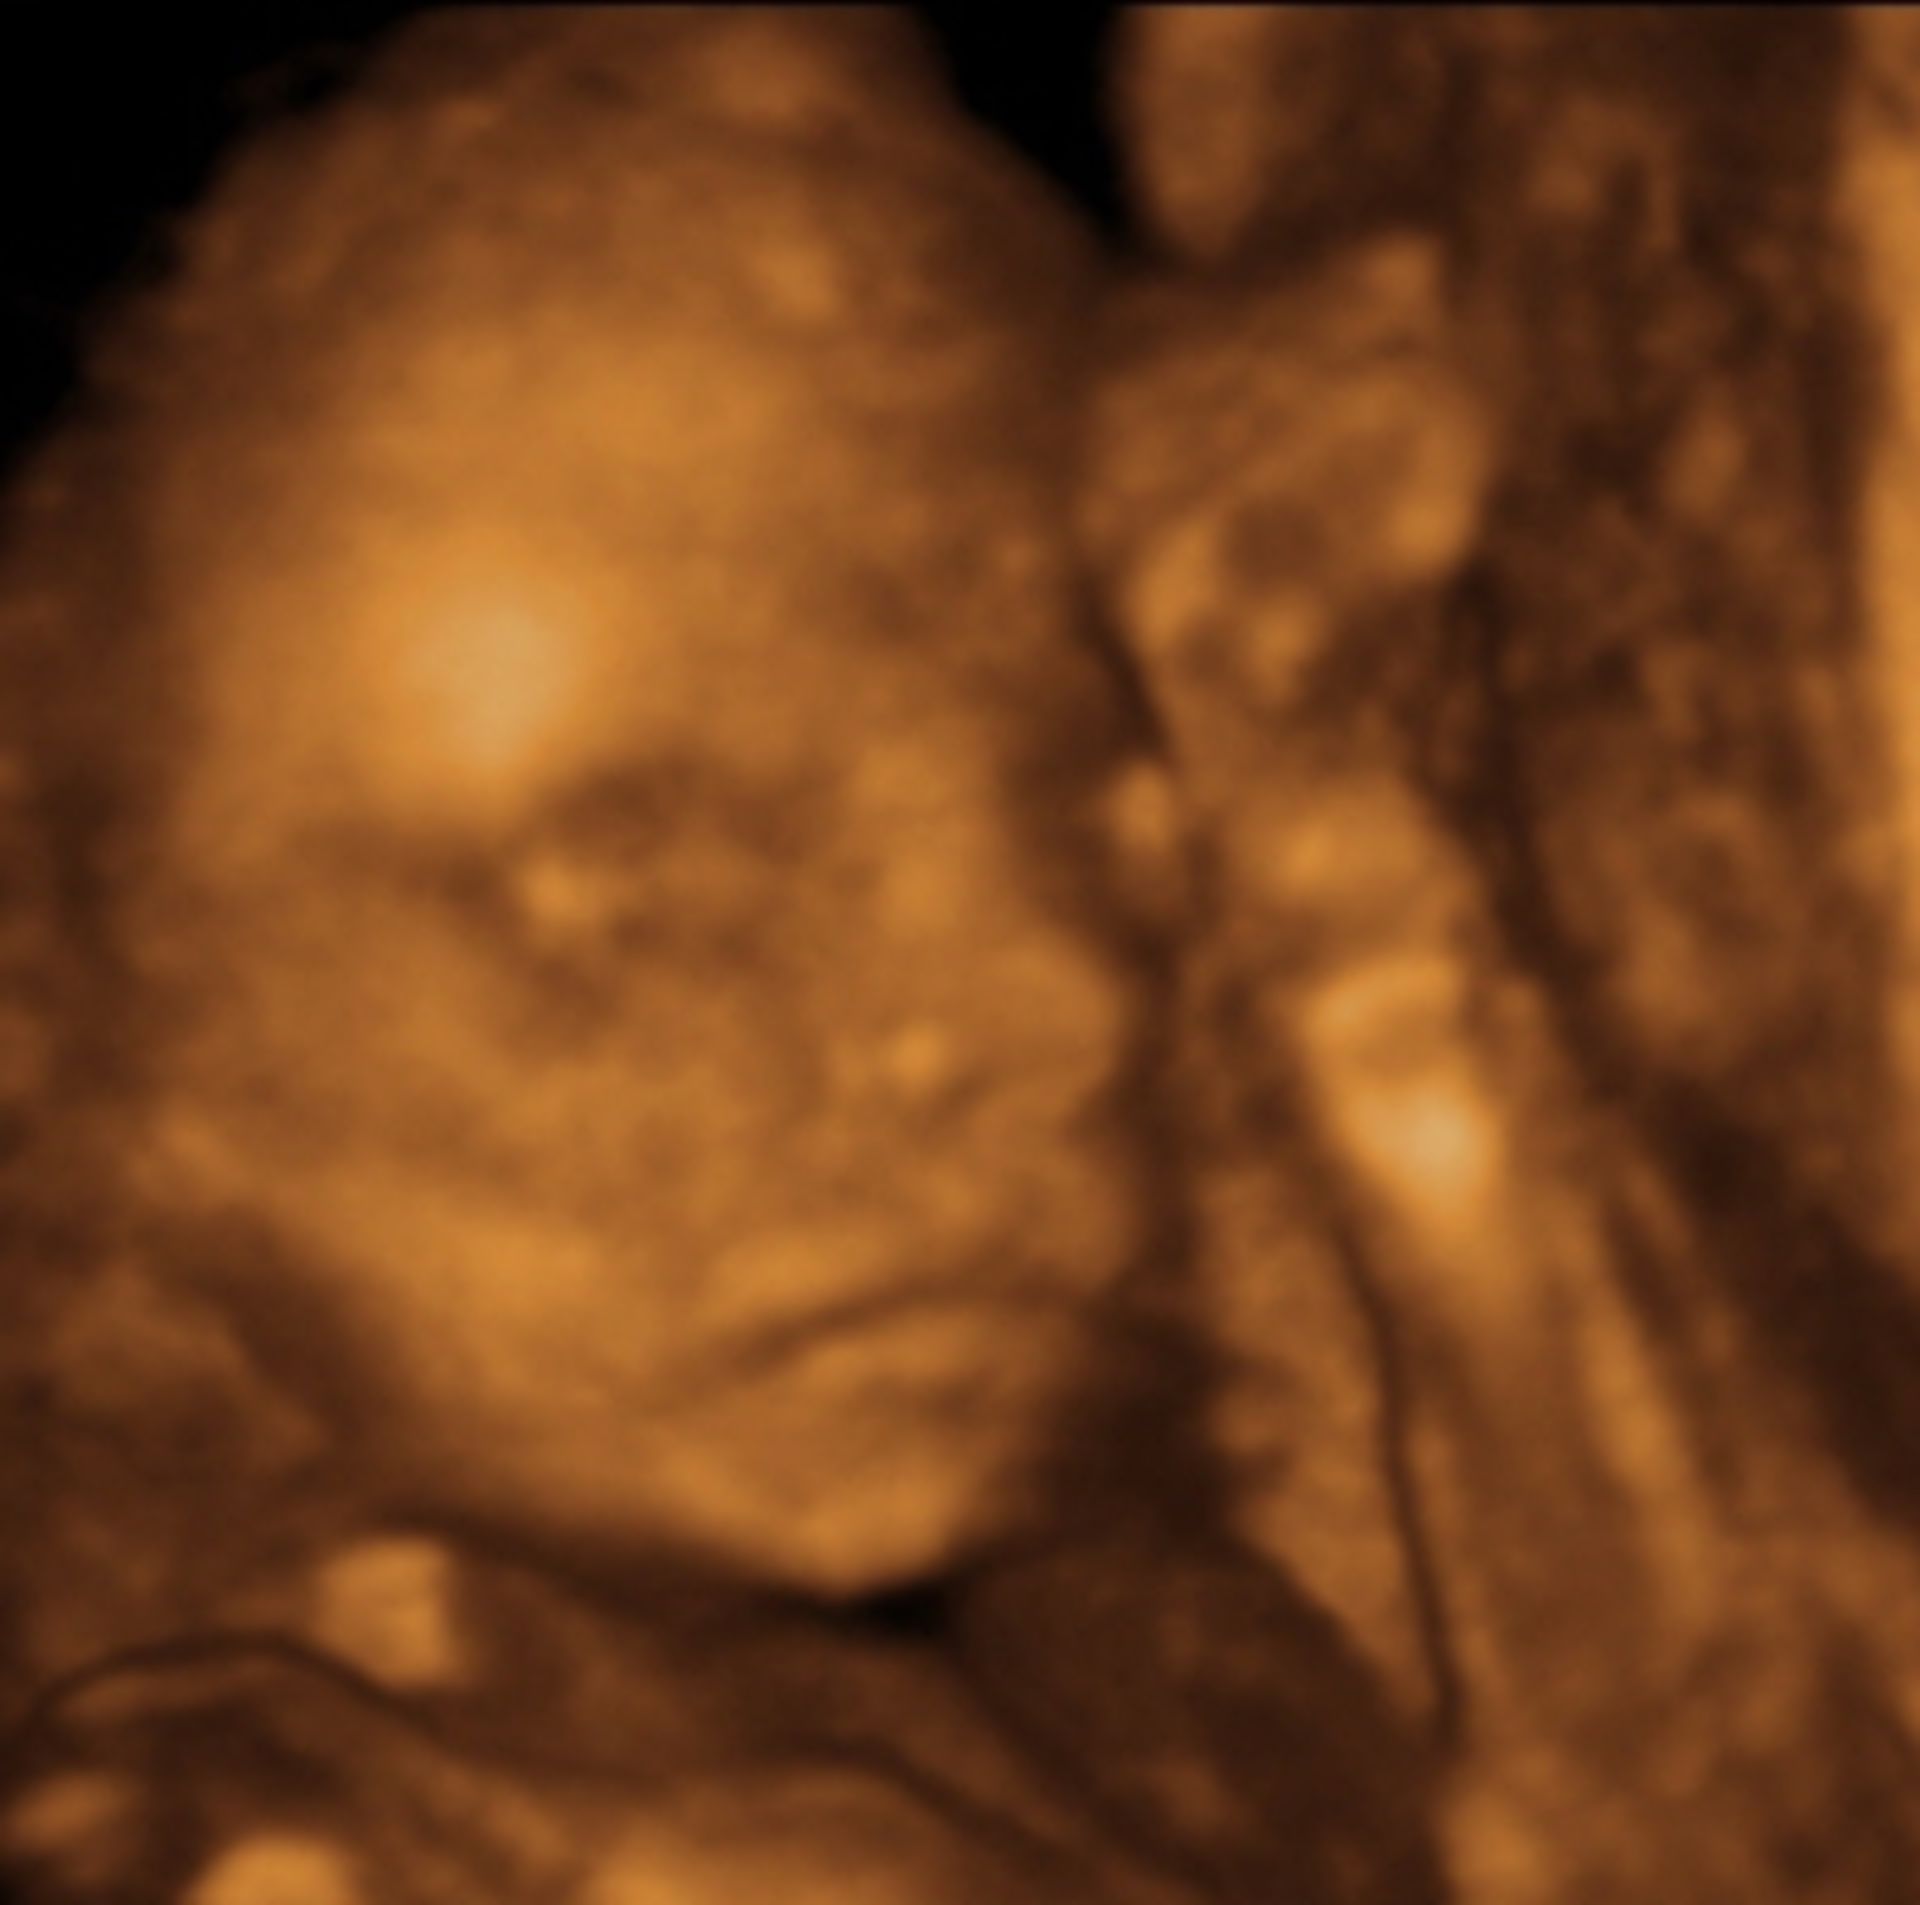 3D-ultrasound, 21 weeks pregnant